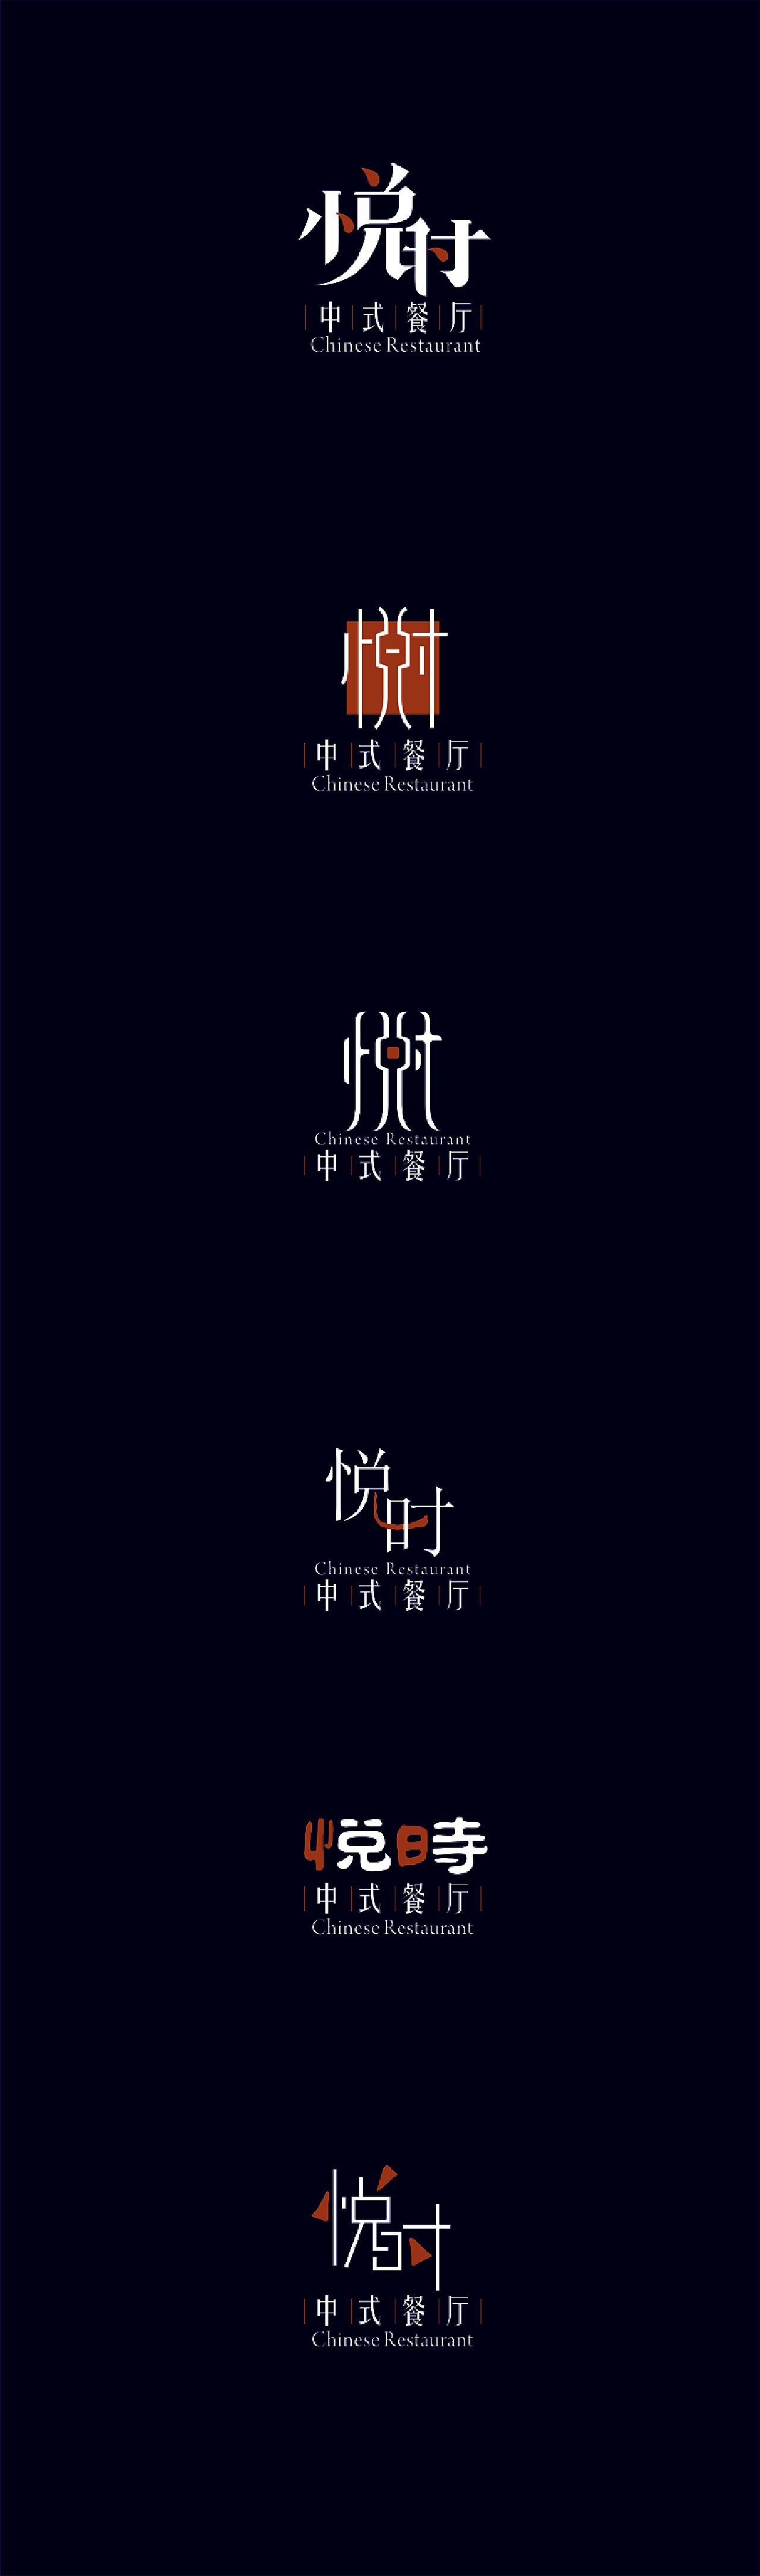 悦时中餐厅logo设计